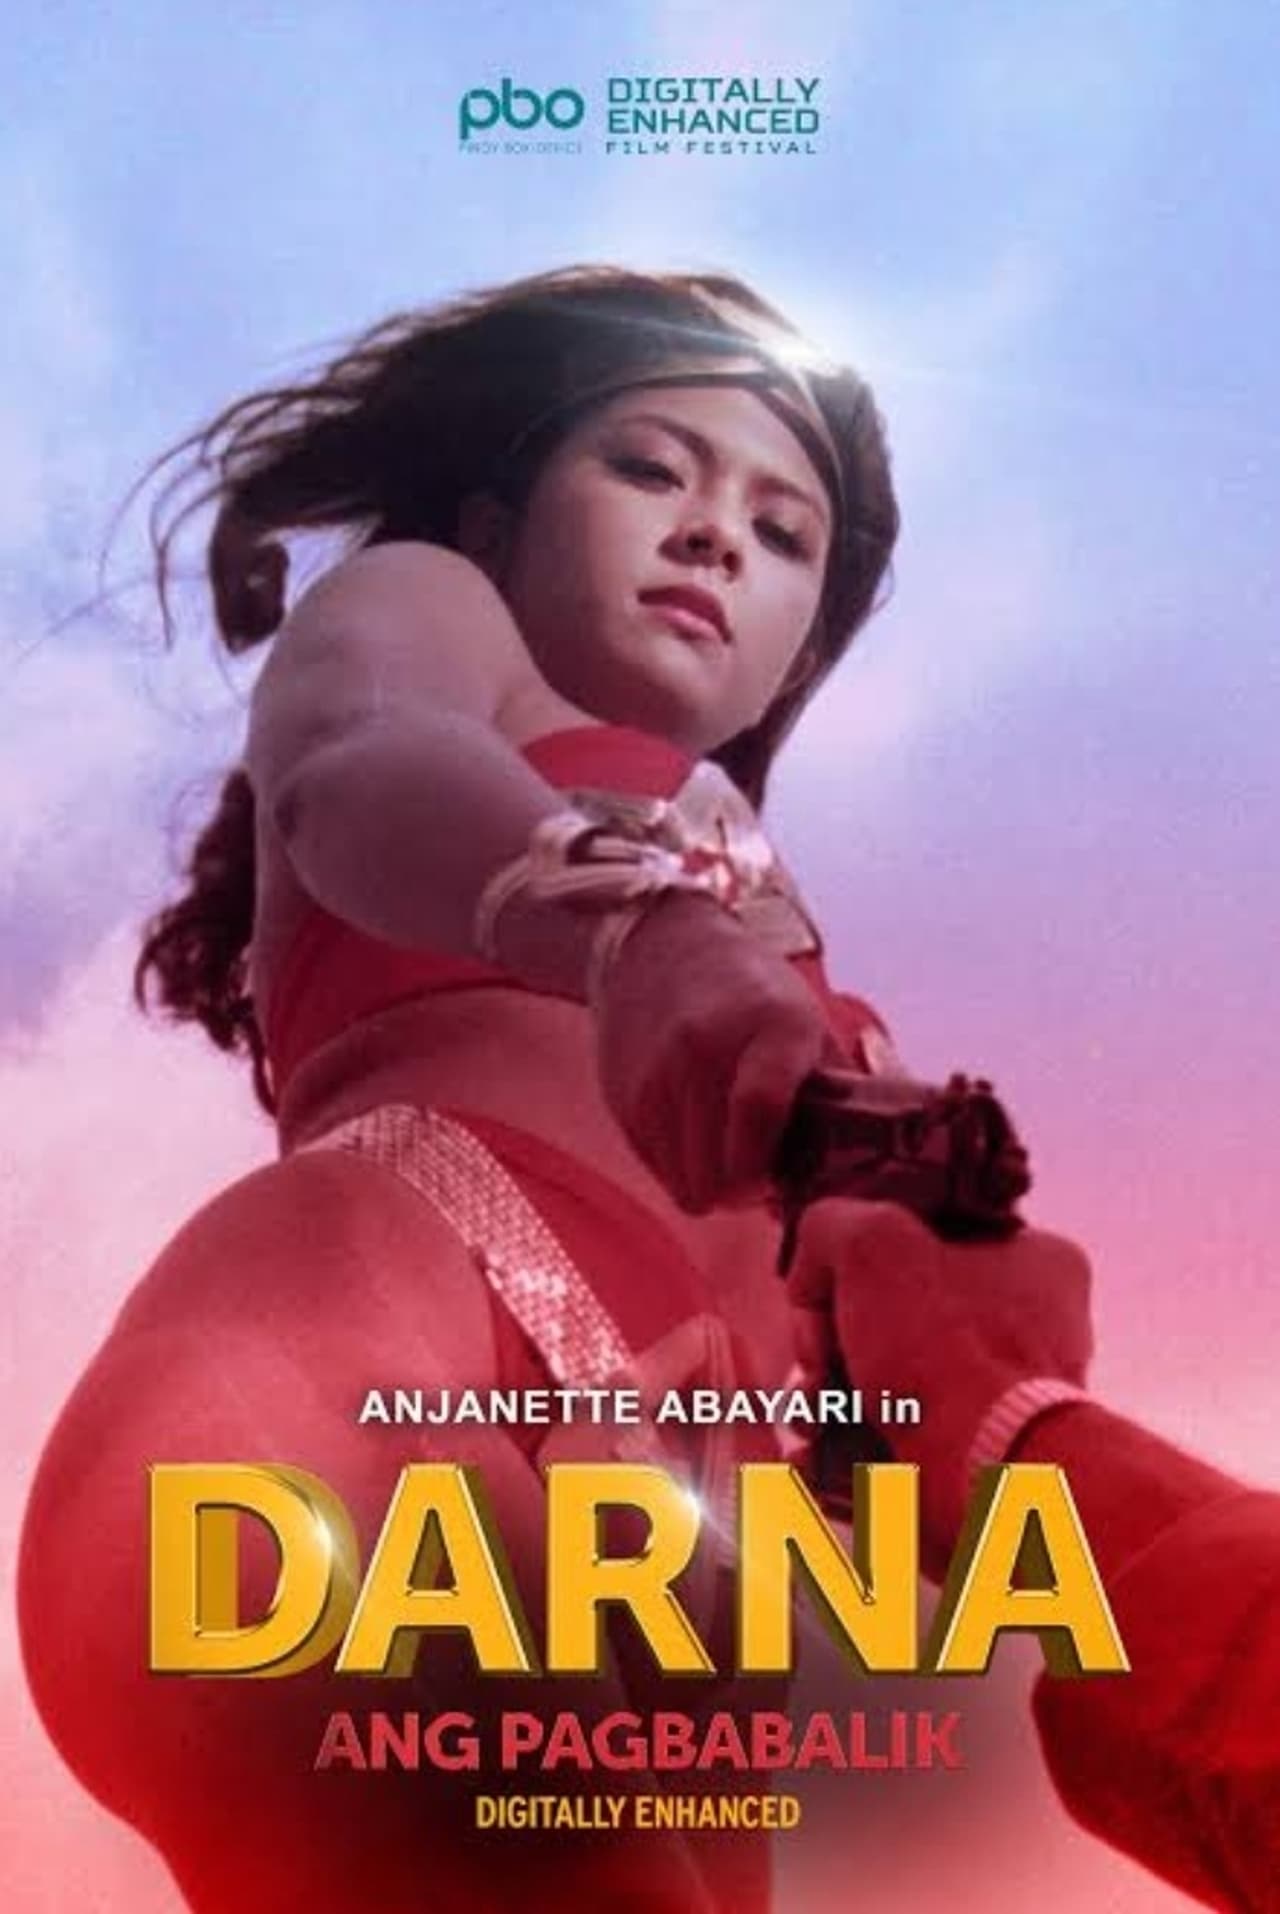 Darna! Ang pagbabalik (1994) Screenshot 1 